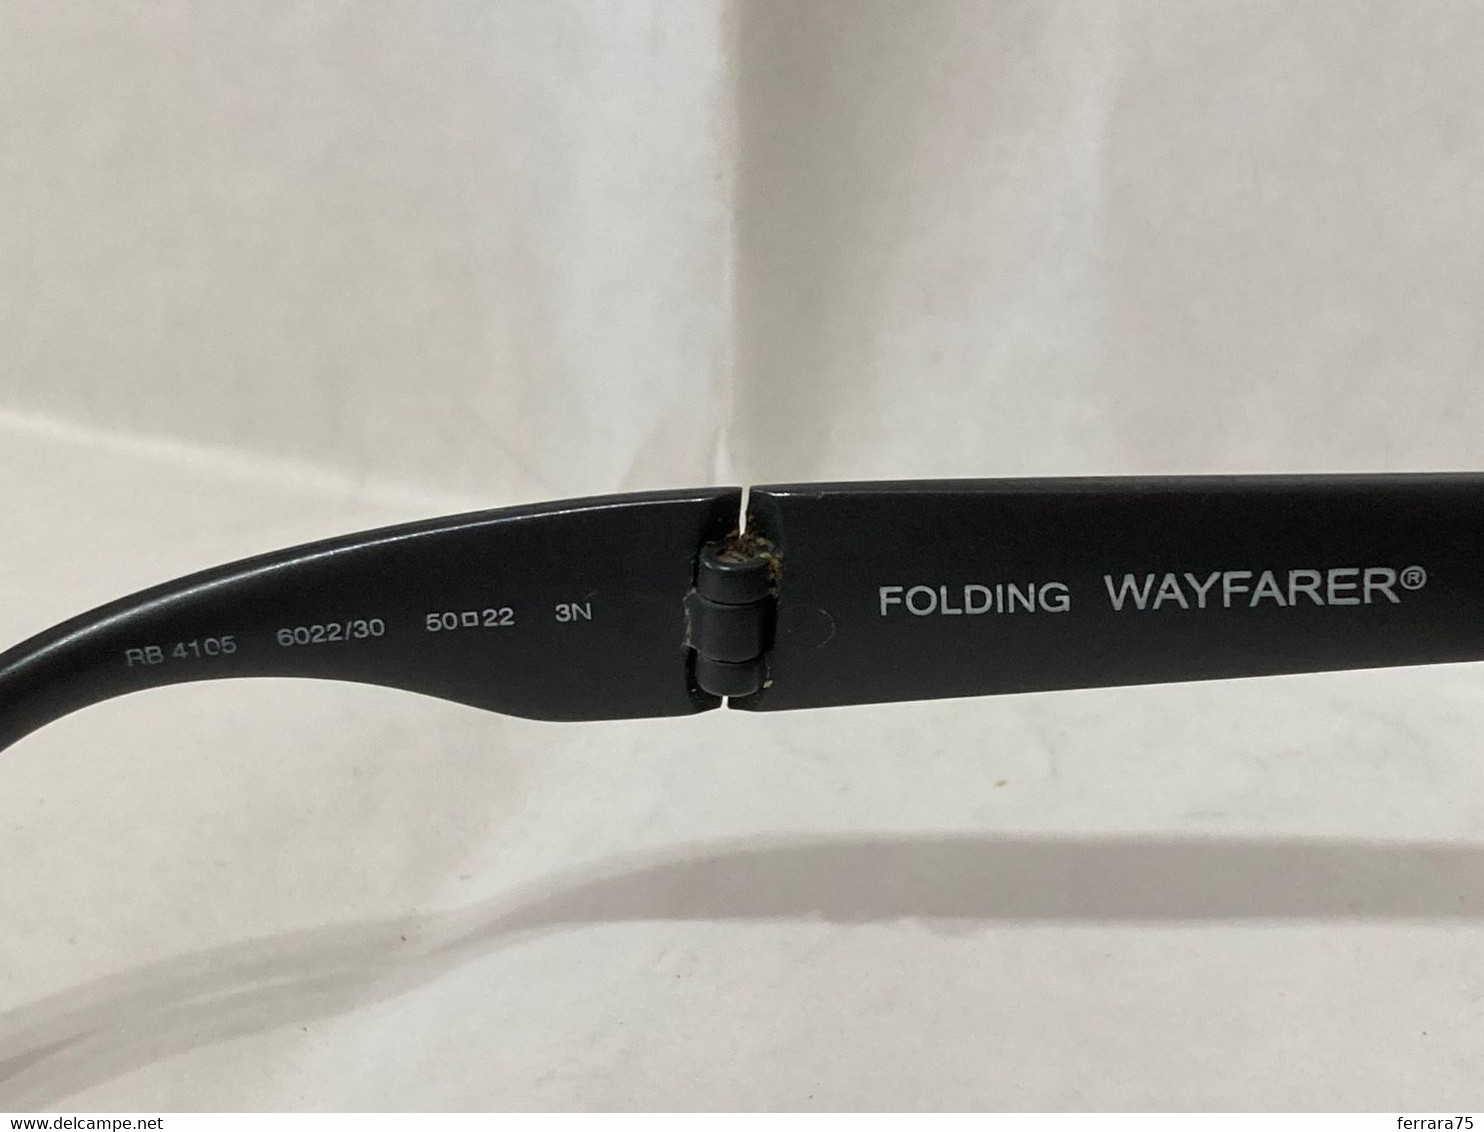 Occhiali Da Sole USATI Ray-Ban Wayfarer Folding RB4105 Lente A Specchio - Sun Glasses